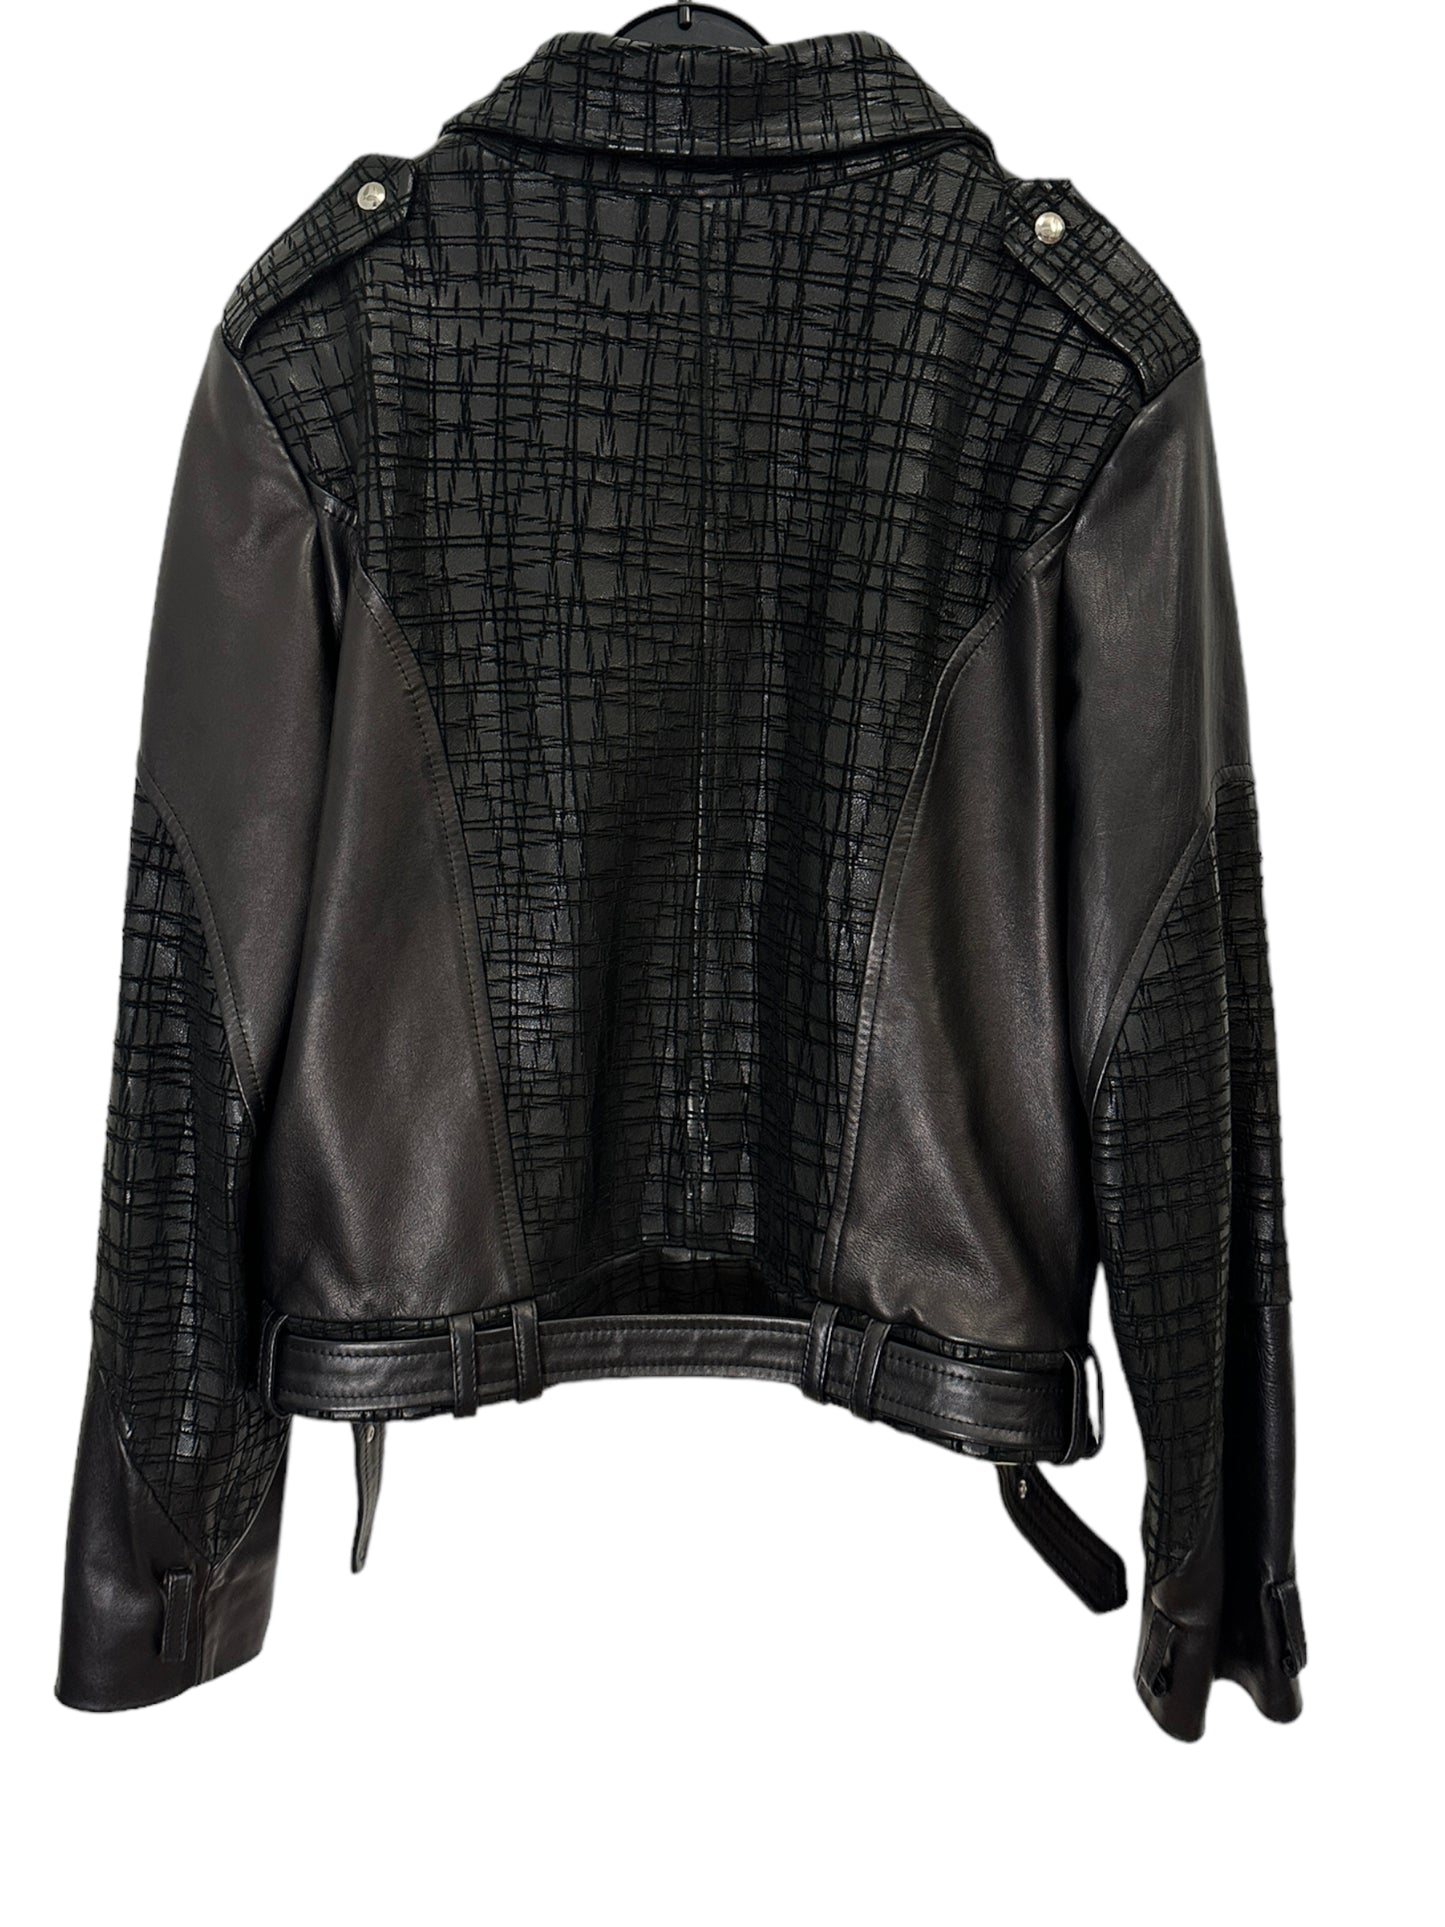 Pritch London -  Leather Jacket - Size UK10/12(US6/8)